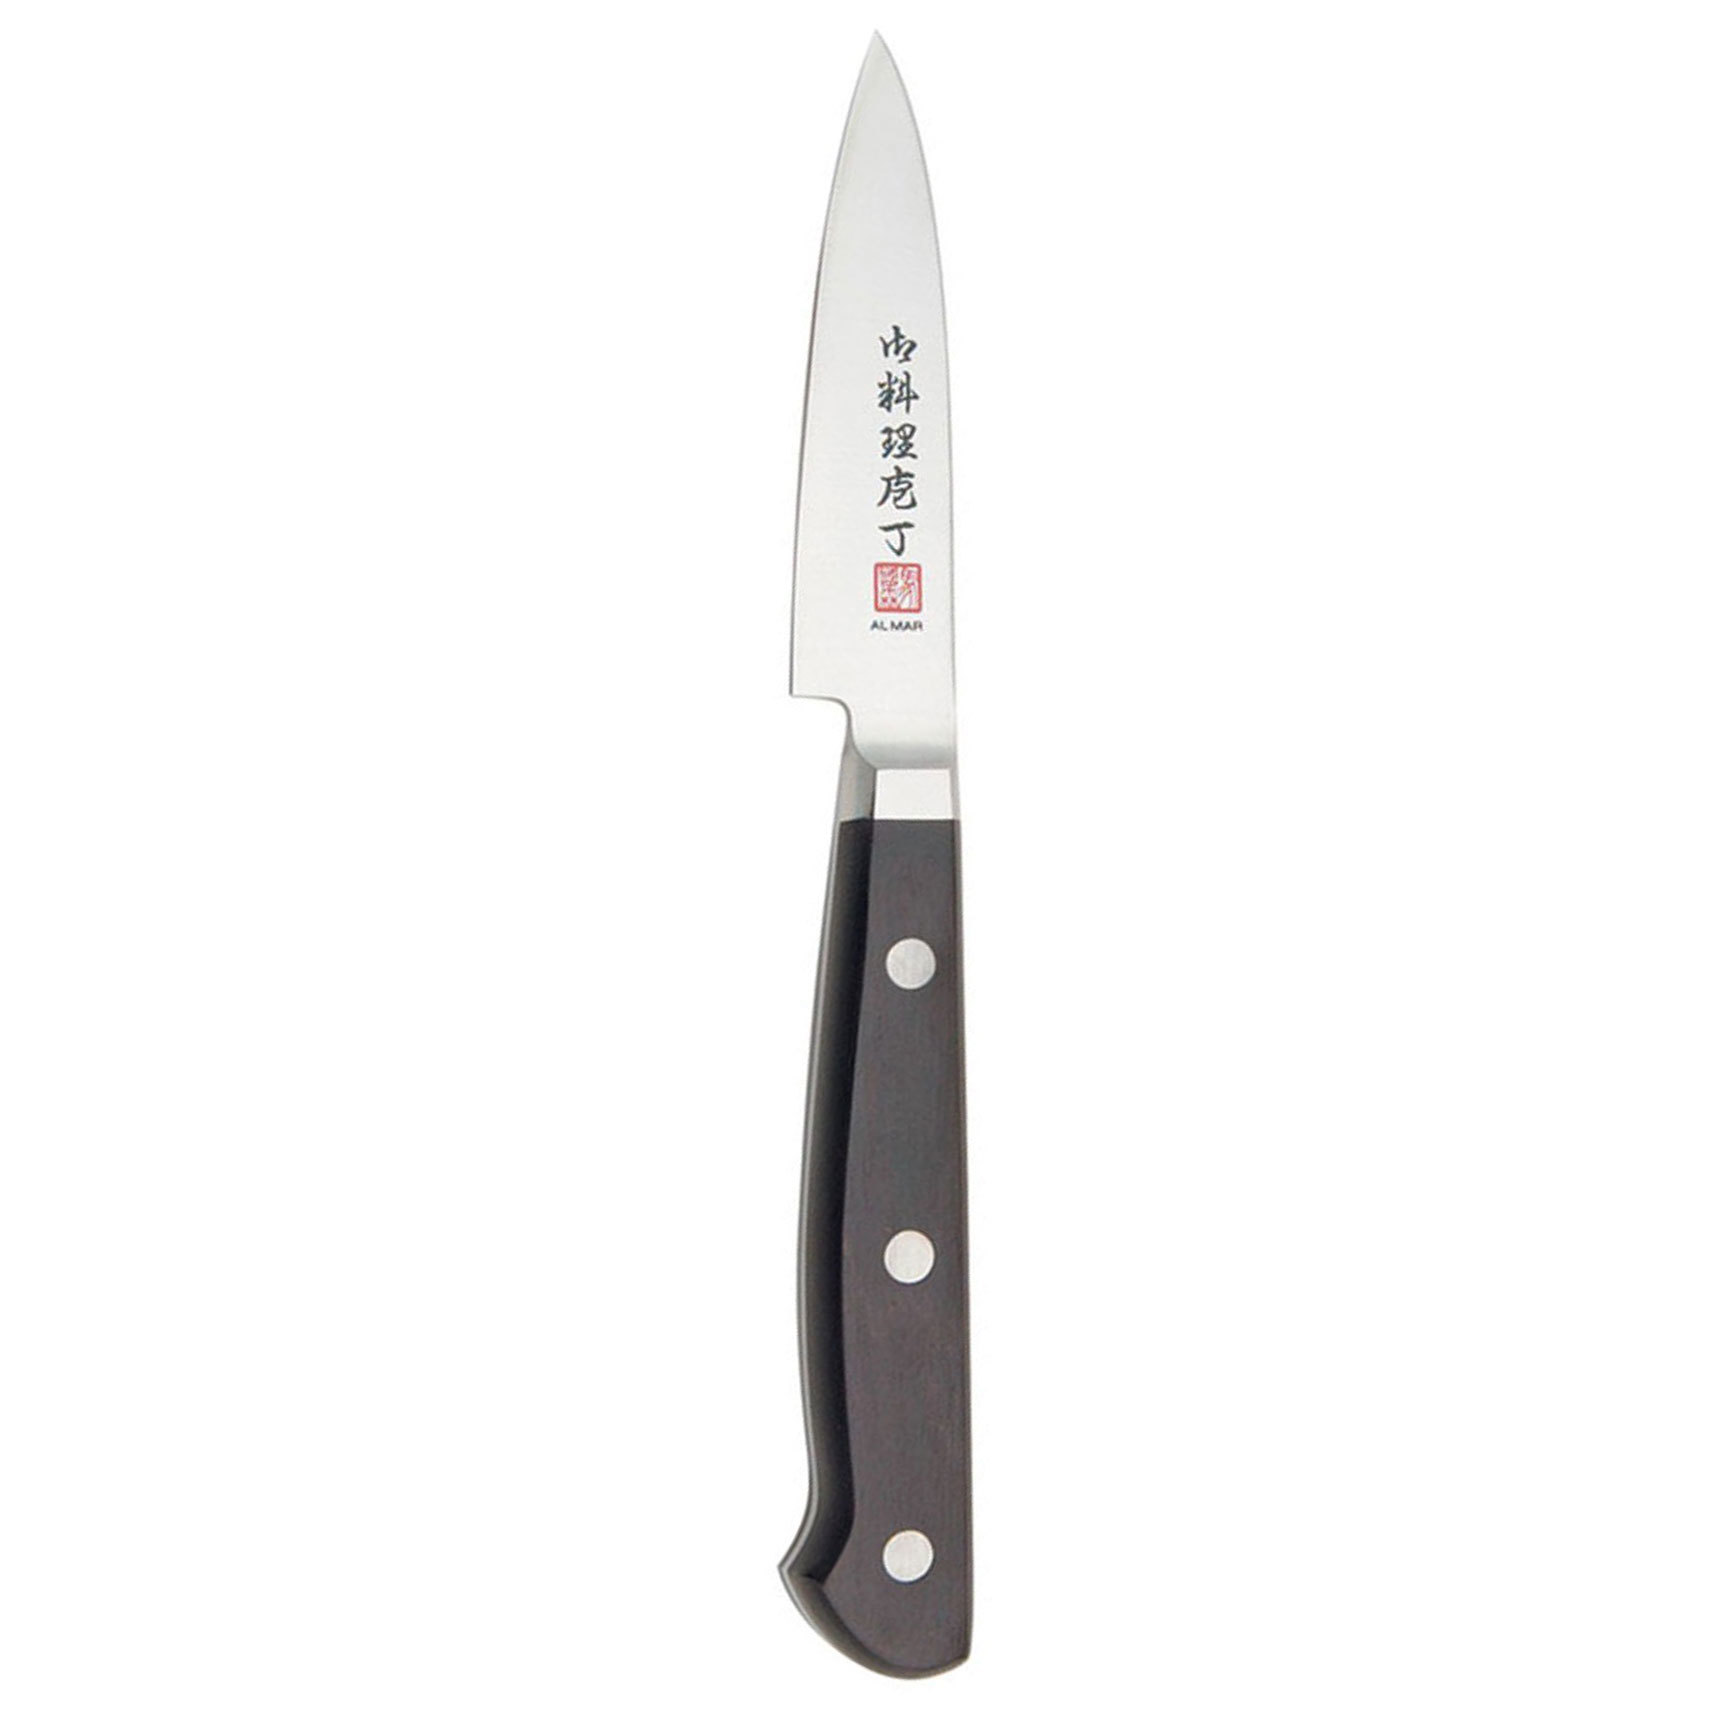 Нож кухонный Al Mar, сталь VG-2/Laminated SUS 410, рукоять Pakka wood, для чистки овощей и фруктов. Фото №3